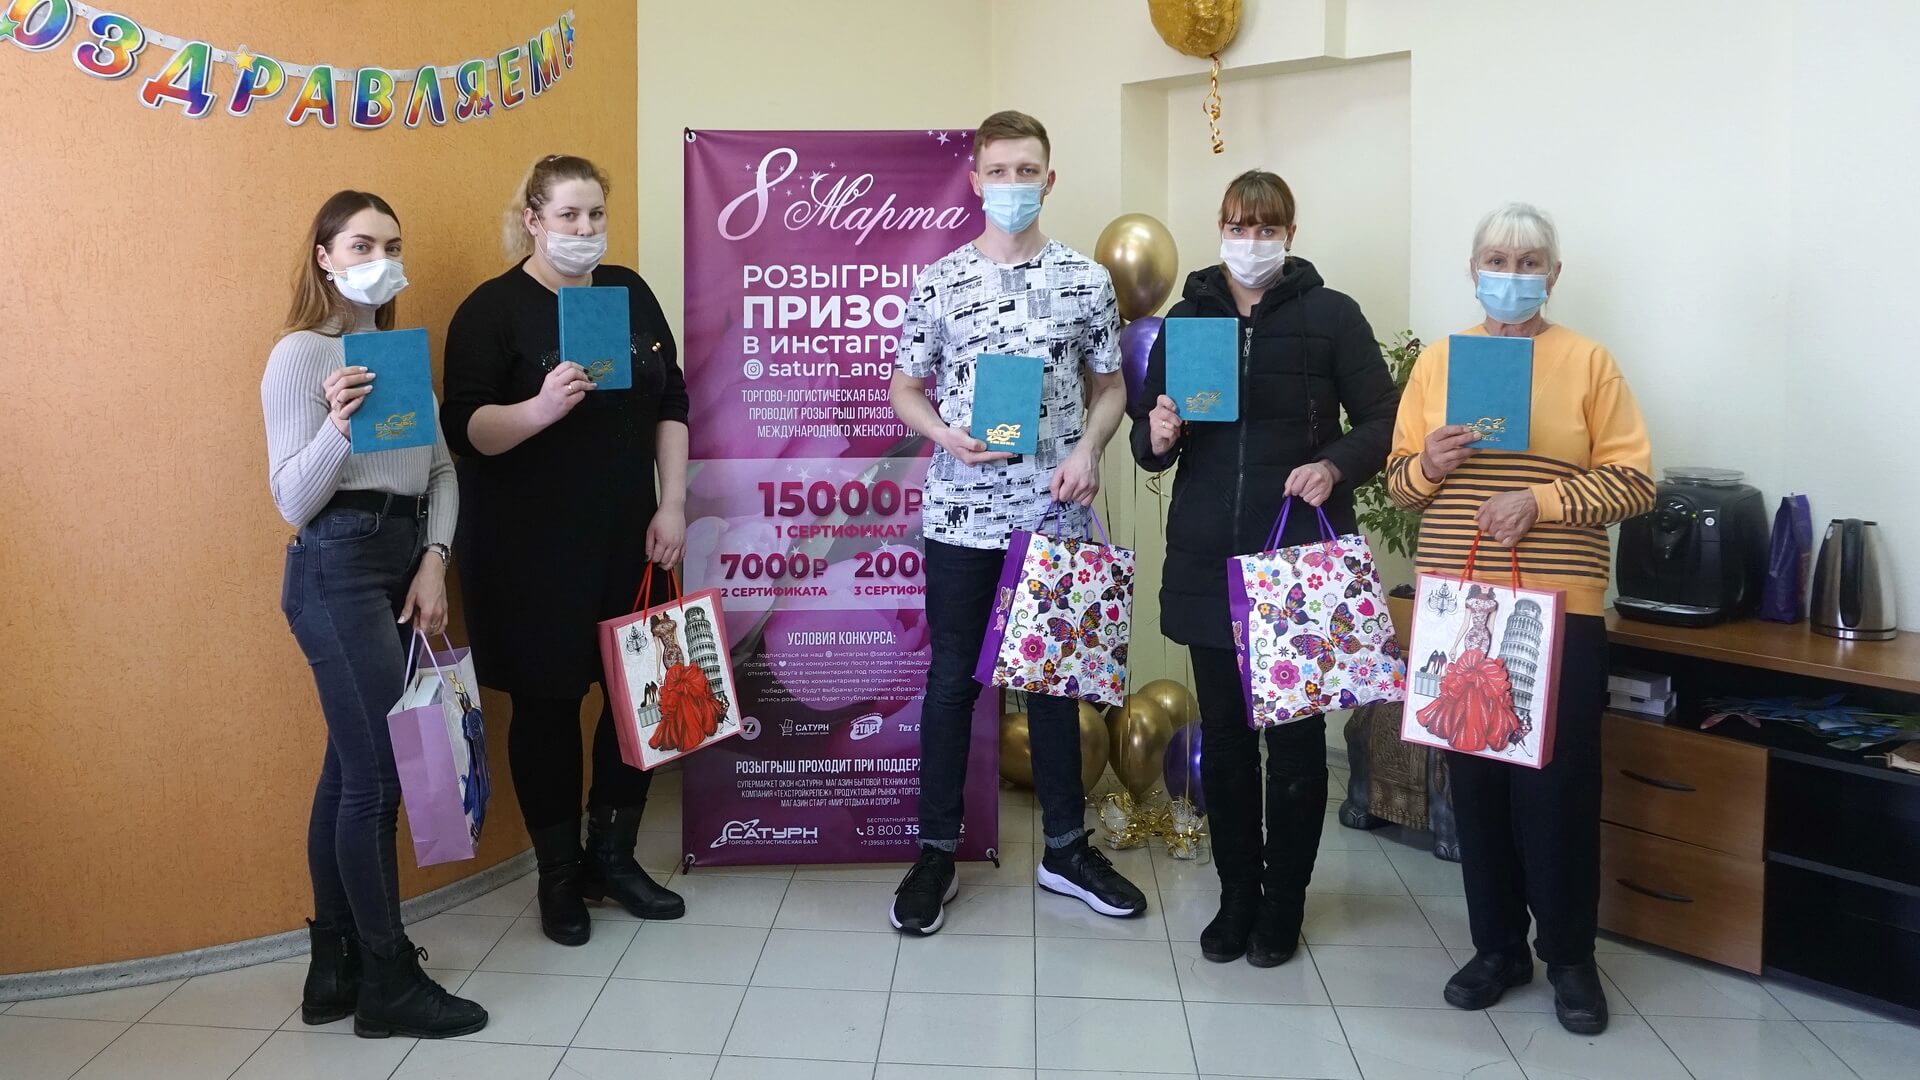 Победители конкурса в инстаграм  от 8 марта, сертификаты от 5000 до 15000 рублей